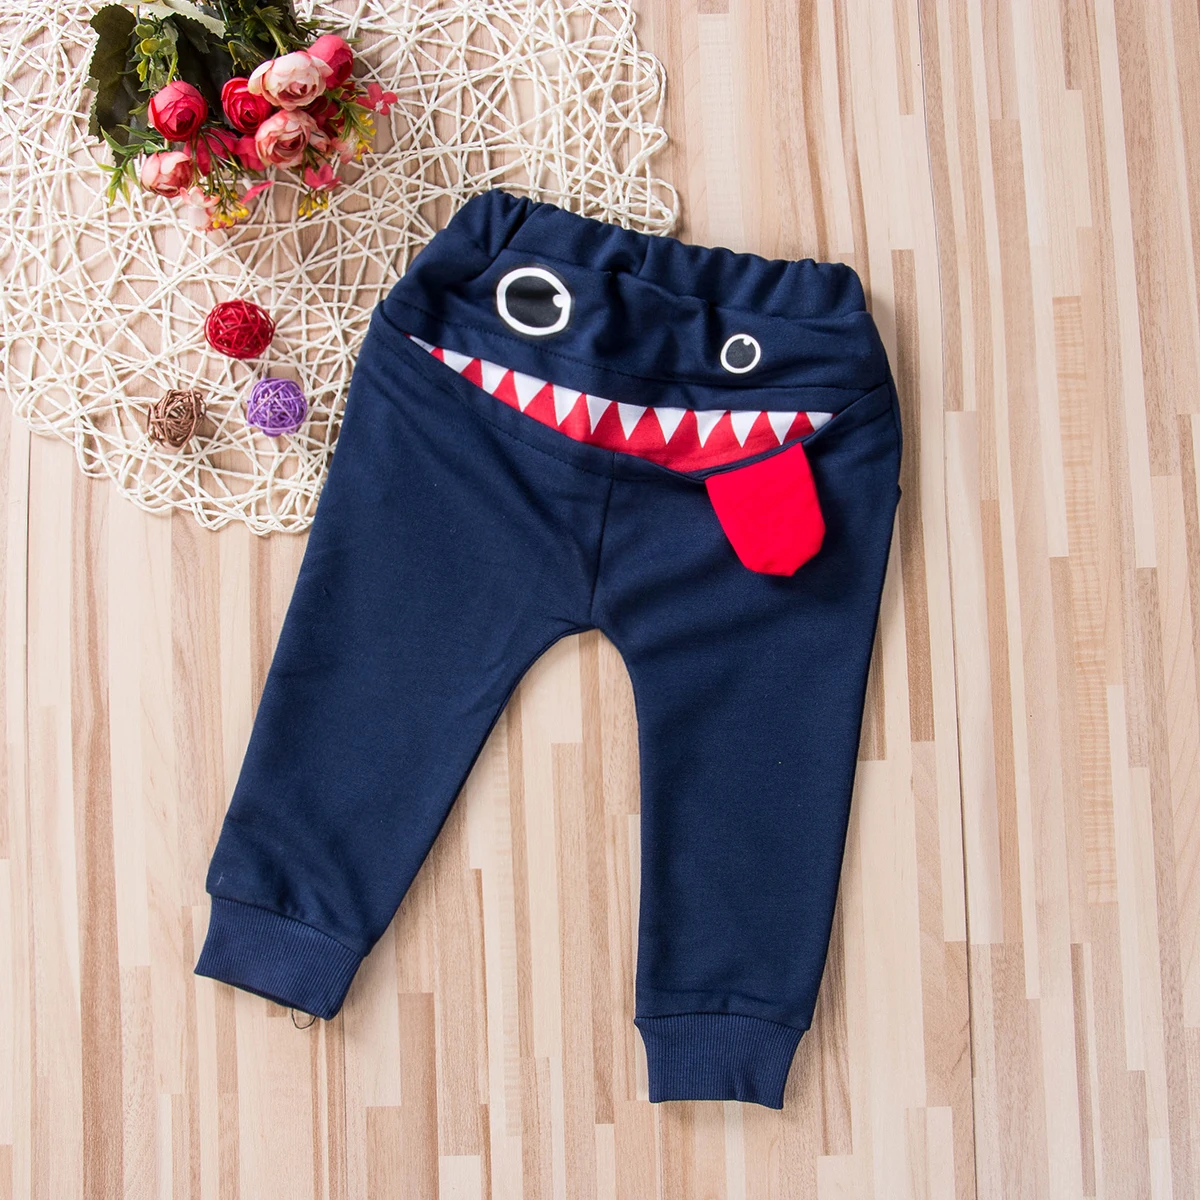 Длинные штаны с принтом «Большая пасть чудовища» для маленьких мальчиков штаны-Леггинсы для бега хлопковая мешковатая одежда для бега От 0 до 4 лет